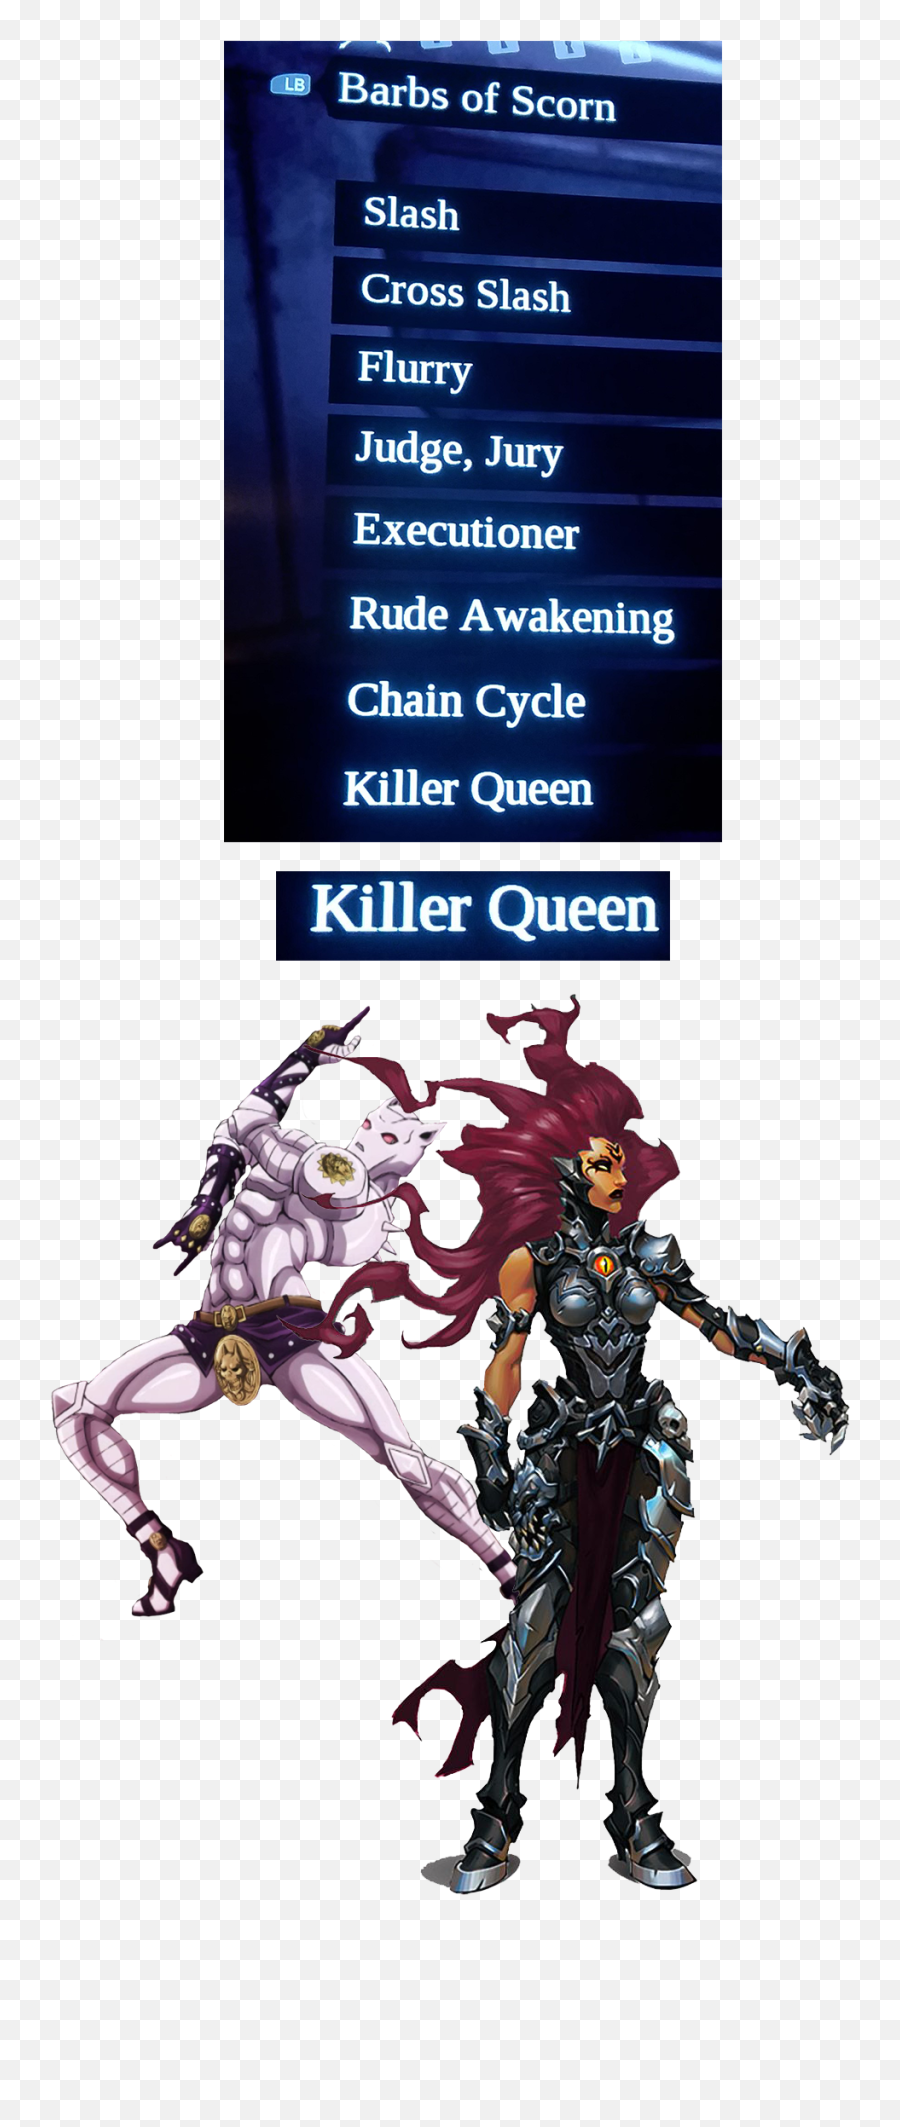 When I See Killer Queen In Darksiders 3 - Darksiders Fury Concept Art Png,Killer Queen Png